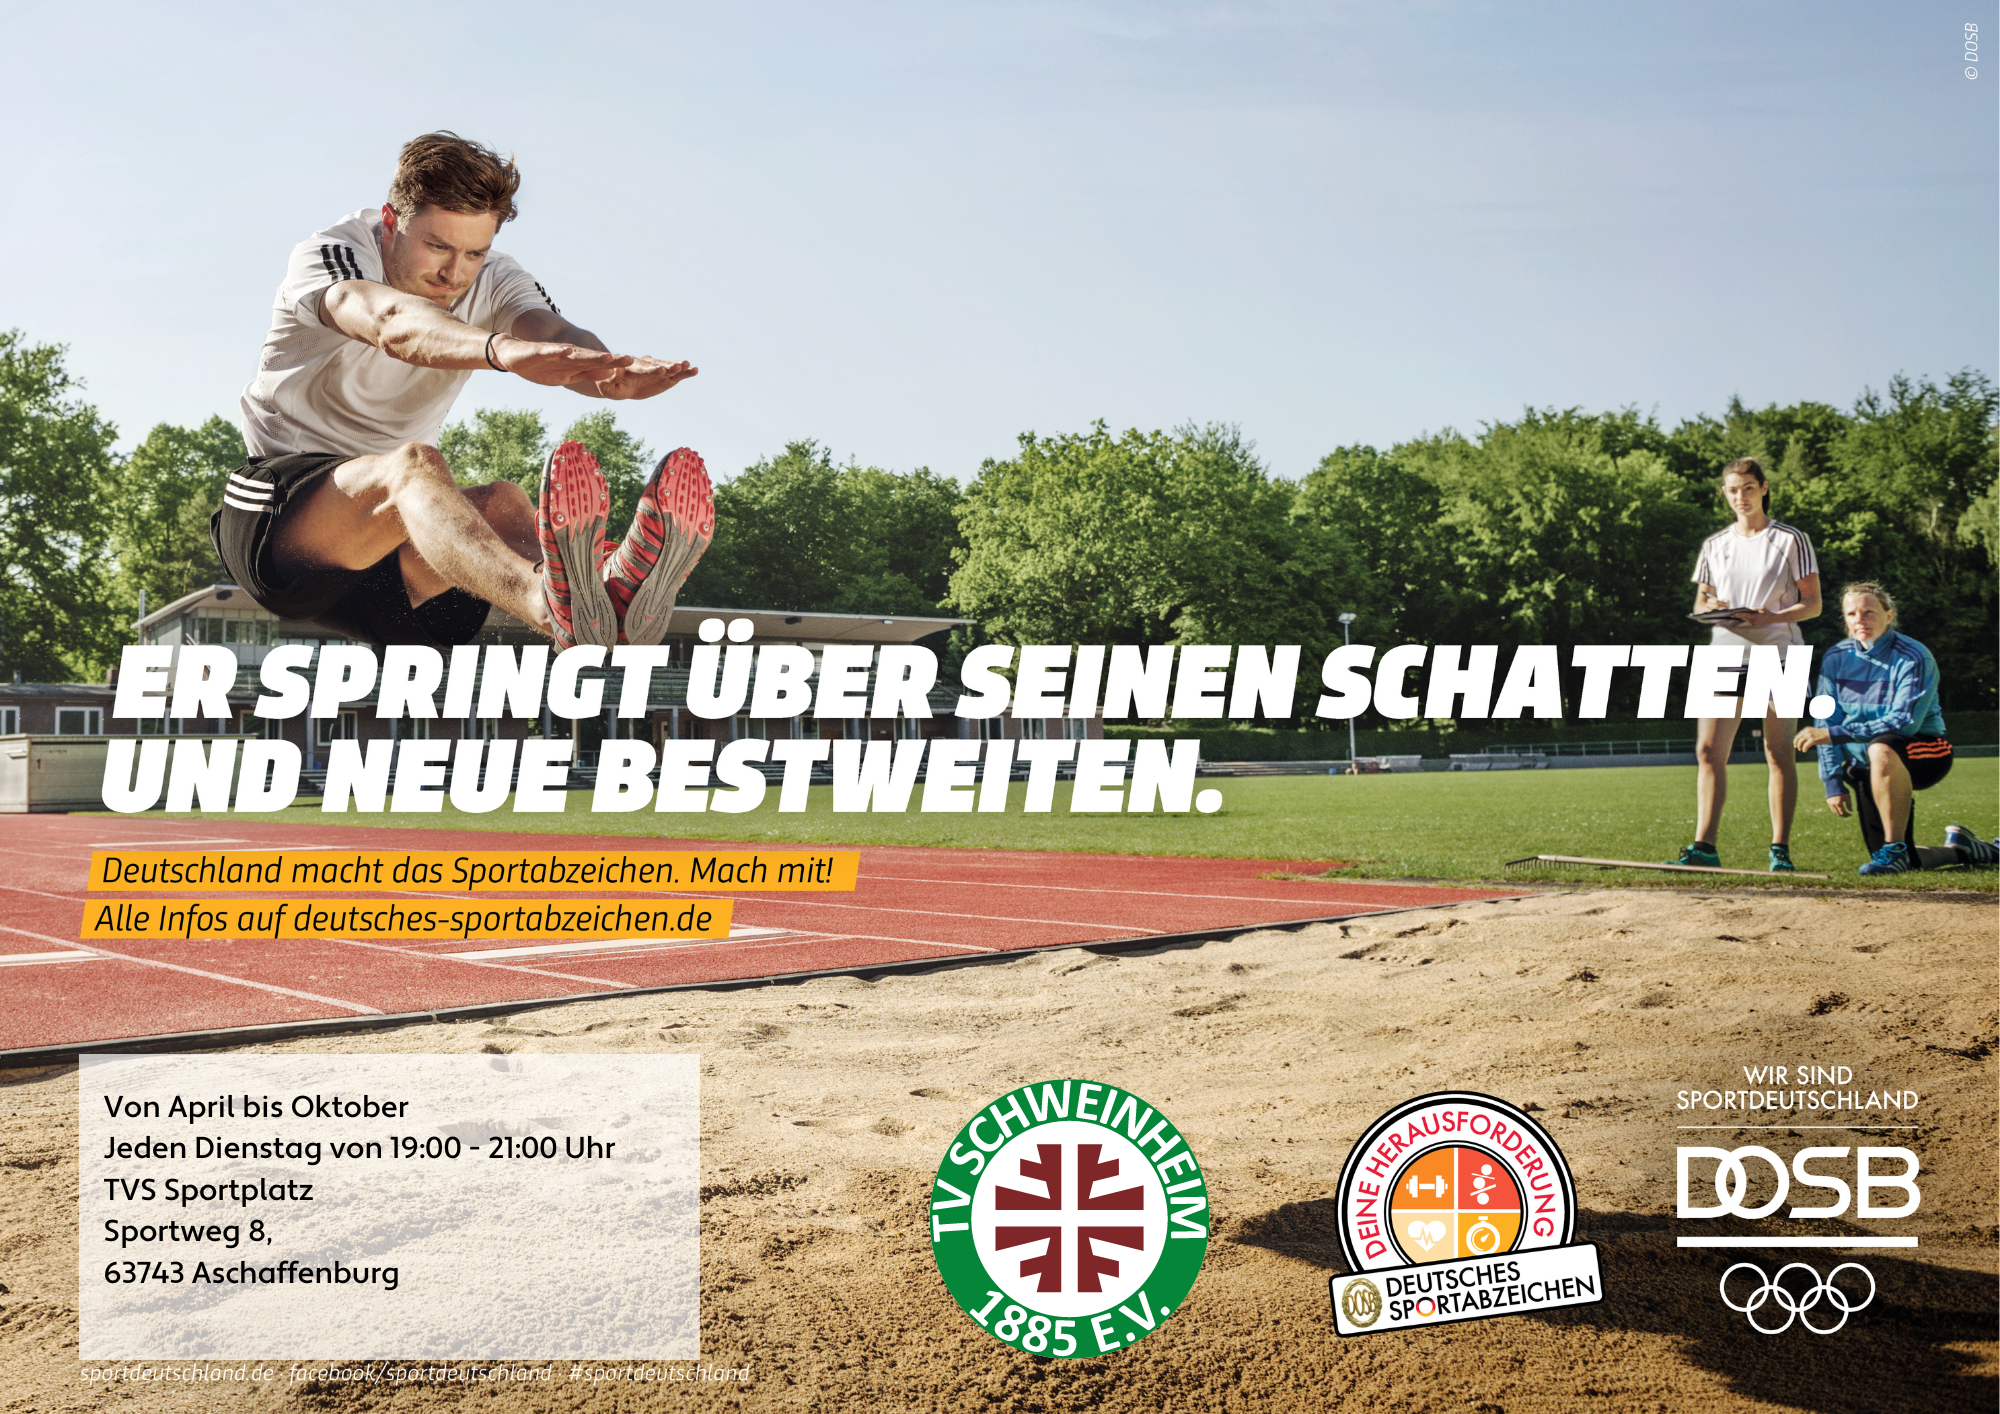 SD-Motiv · Deutsches Sportabzeichen · Weitsprung